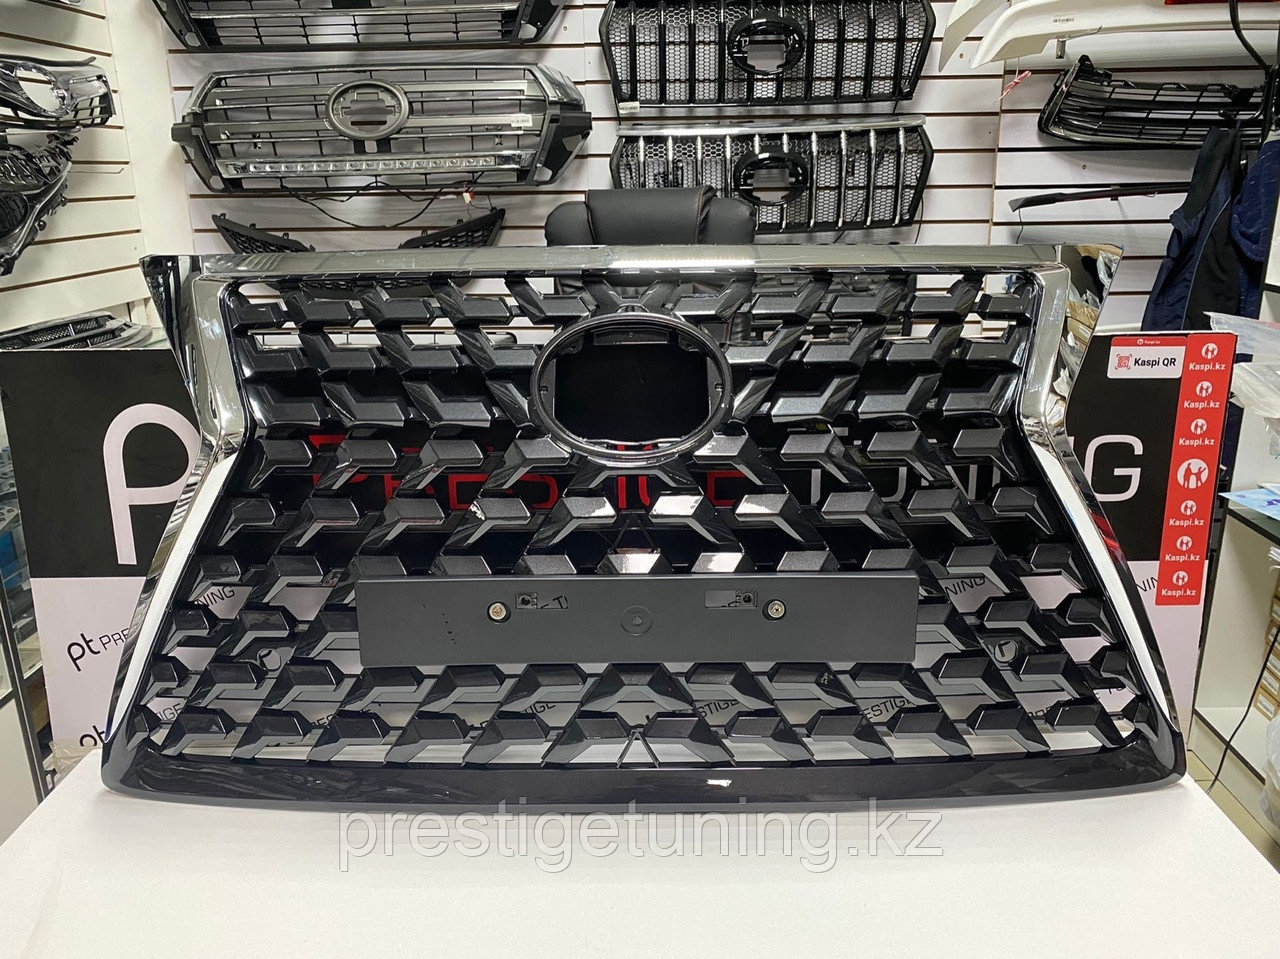 Решетка радиатора на Lexus GX460 2014-19 стиль 2021, фото 1